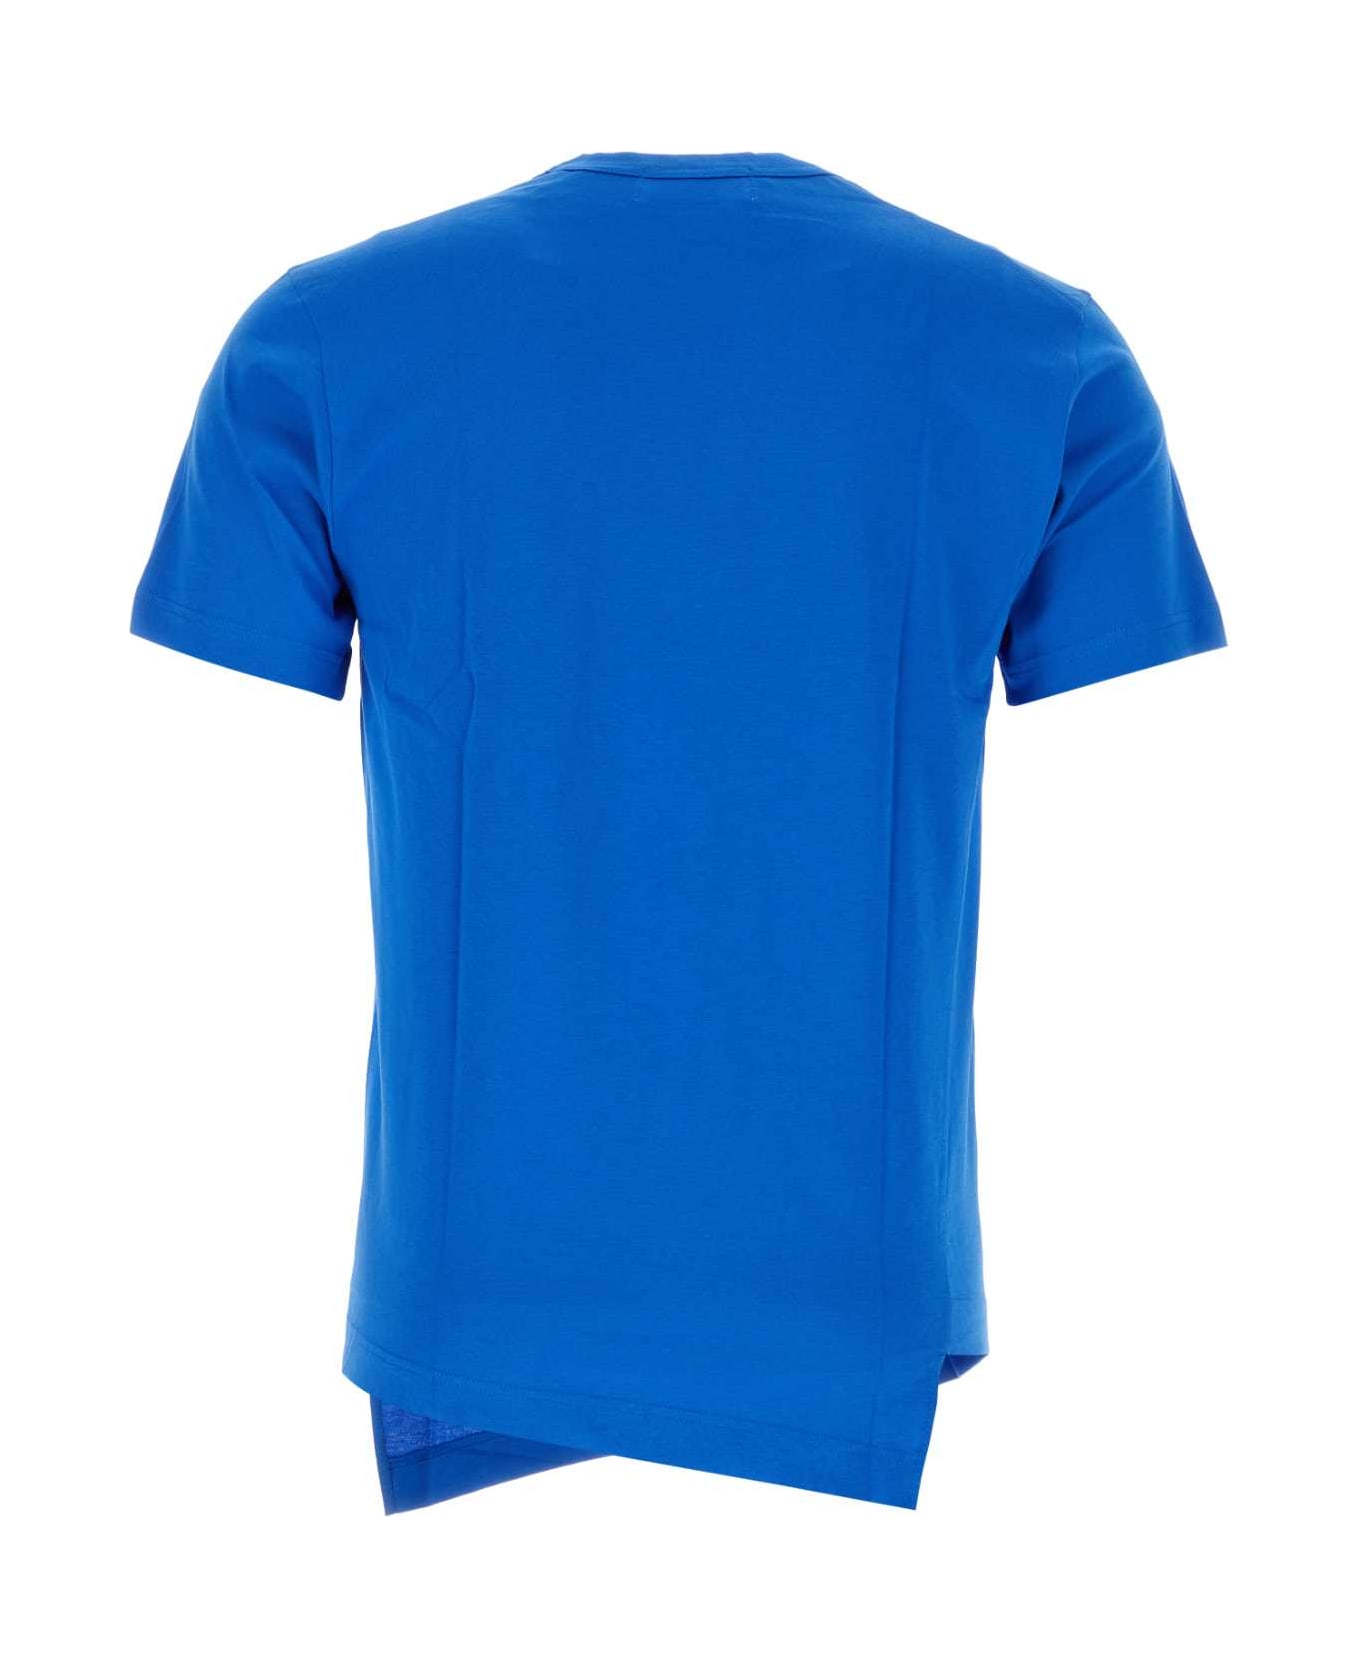 Comme des Garçons Shirt Cerulean Blue Cotton Comme Des Garã§ons Shirt X Lacoste T-shirt - BLUE